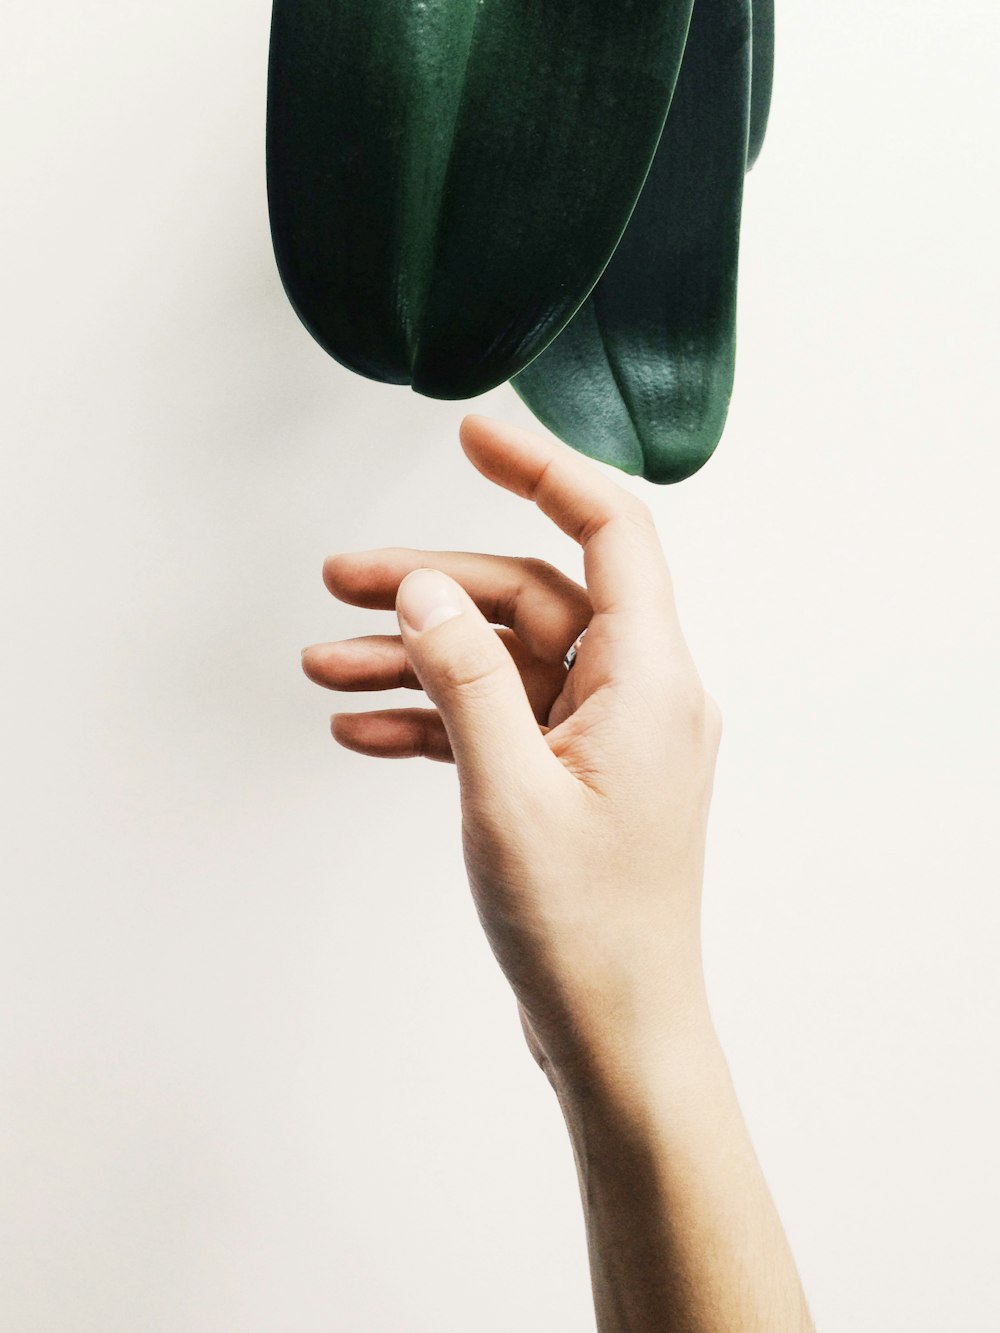 La mano di una persona che raggiunge una pianta verde